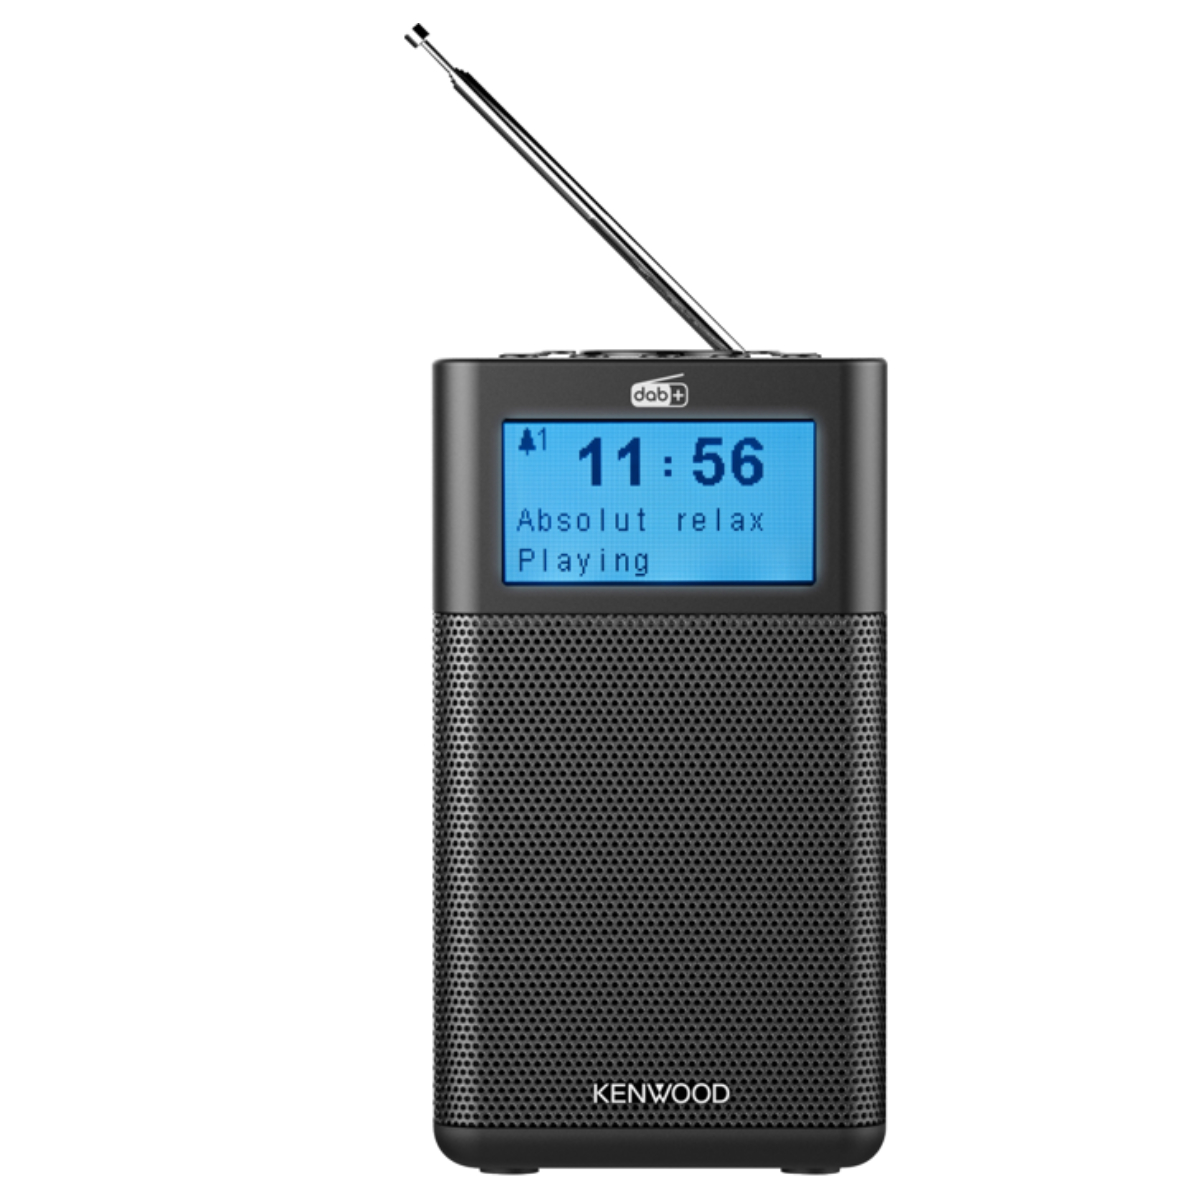 Kenwood CR-M10DAB-B Tranzistor uređaj sa FM i DAB + tjuneron i Bluetooth Audio strimingom za povezivanje sa drugim uređajima. ,Kenwood CR-M10DAB-B Tranzistor uređaj sa FM i DAB + tjuneron i Bluetooth Audio strimingom za povezivanje sa drugim uređajima. ,K